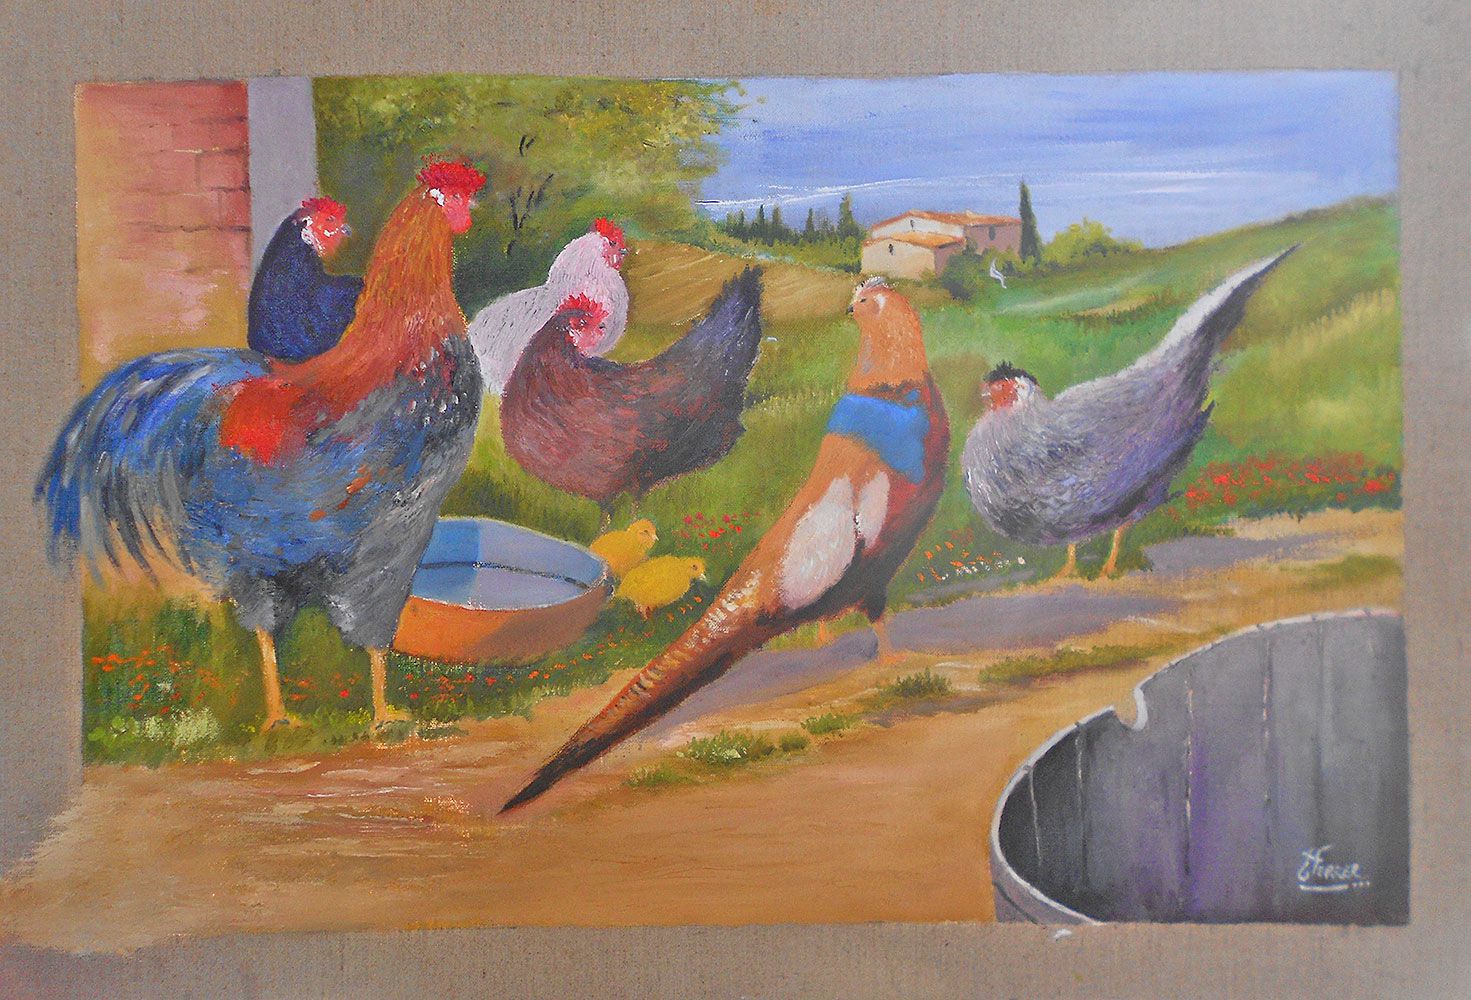 Jean Marie Ferrer artiste peintre de Provence, vente en ligne de tableaux à l'huile au couteau sur toile au couleurs de la Provence. Réunion en basse-cour